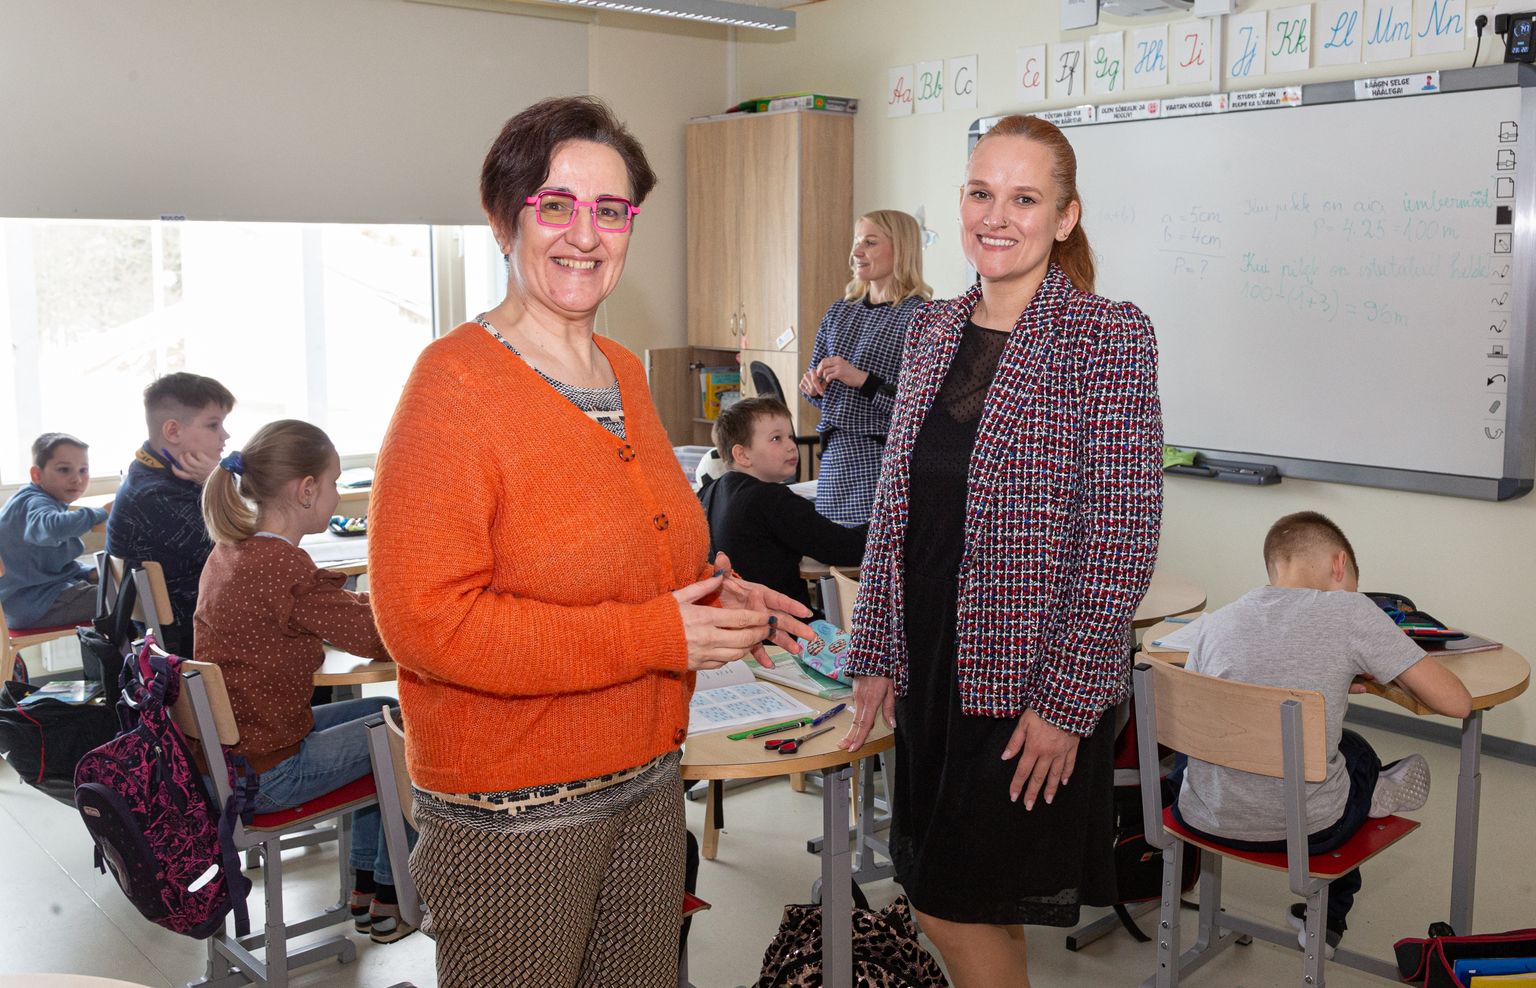 Kogenud õpetaja Kristiina Raidvere Paidest tutvus kevadel proovipäevadel teiste seas Sinimäe kooli ja selle direktori Aljona Kordontšukiga. Sügisest asus ta sealsamas tööle.